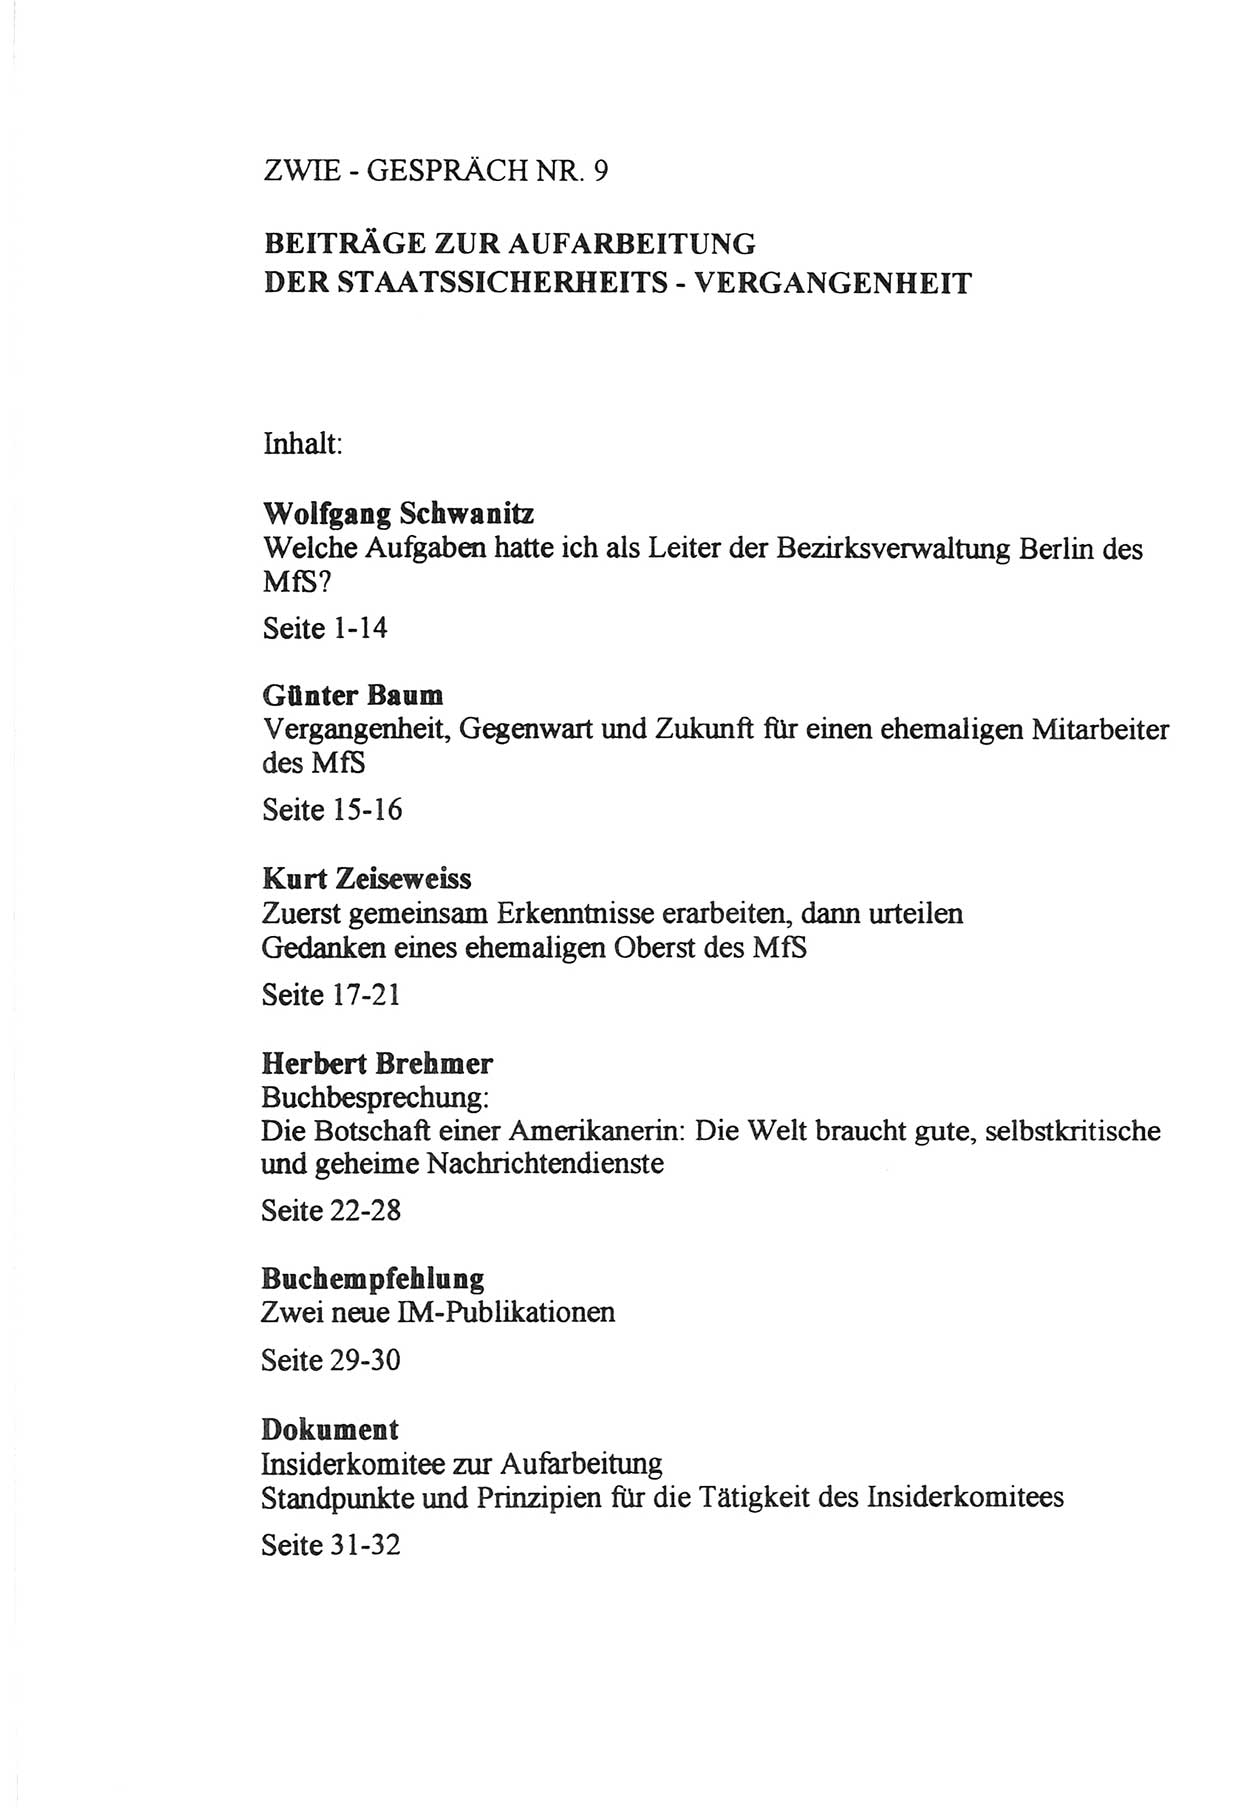 Zwie-Gespräch, Beiträge zur Aufarbeitung der Staatssicherheits-Vergangenheit [Deutsche Demokratische Republik (DDR)], Ausgabe Nr. 9, Berlin 1992, Seite 33 (Zwie-Gespr. Ausg. 9 1992, S. 33)